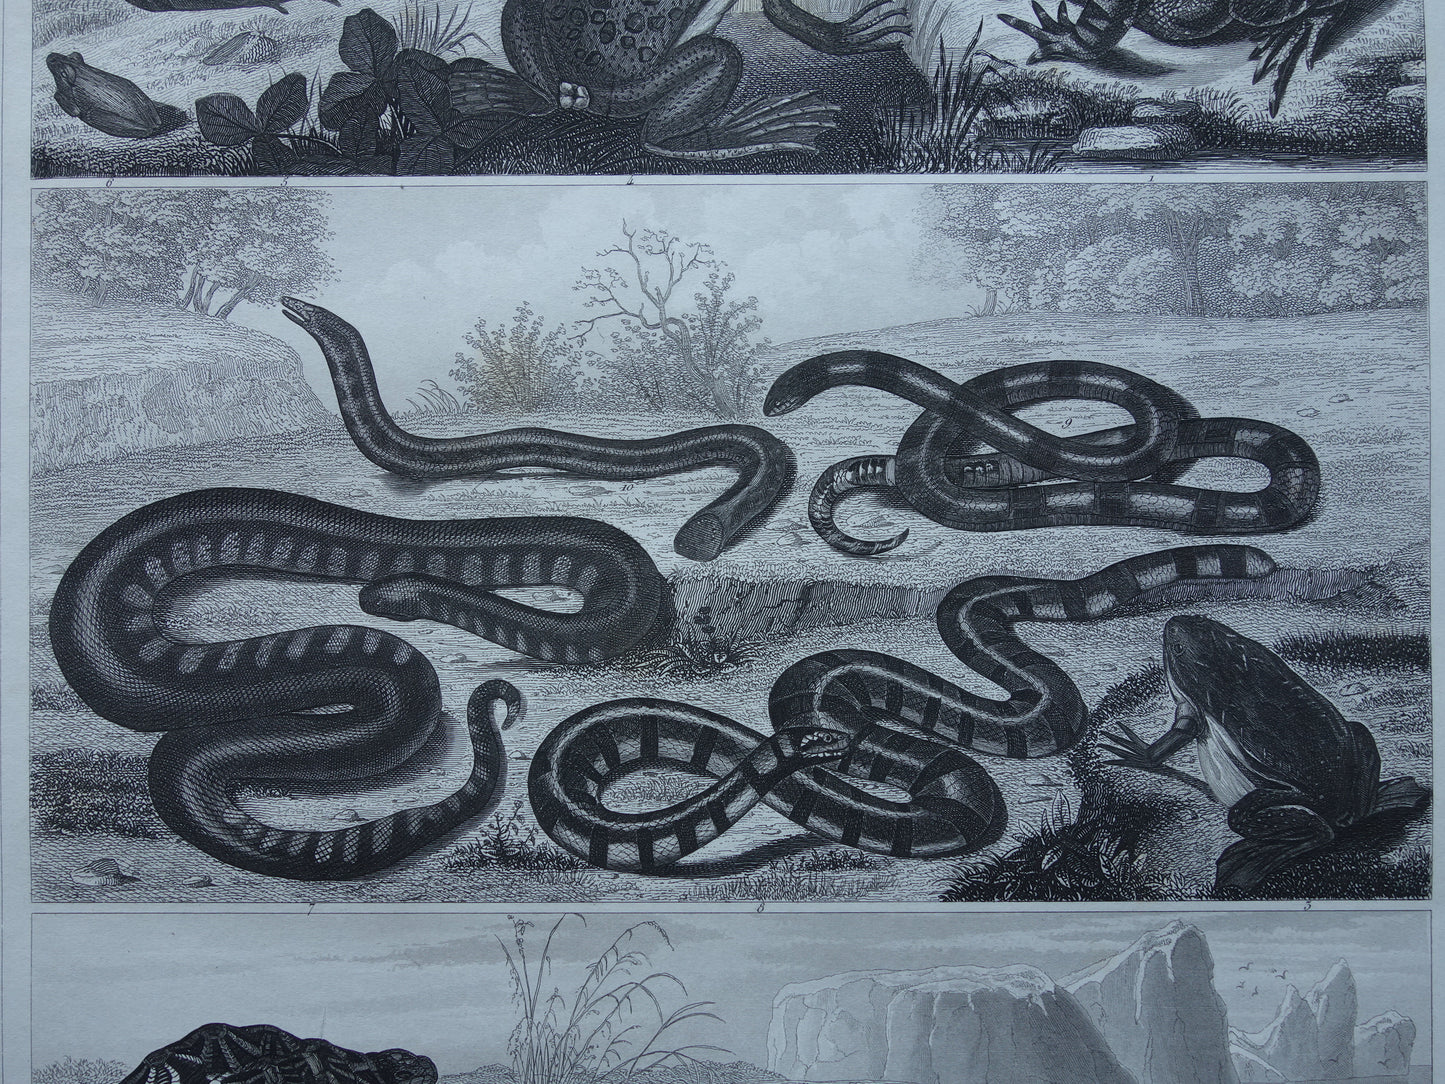 Kikker Slang Schildpad oude reptielen prent uit het jaar 1849 originele antieke Kikkers Padden Slangen illustratie vintage prints